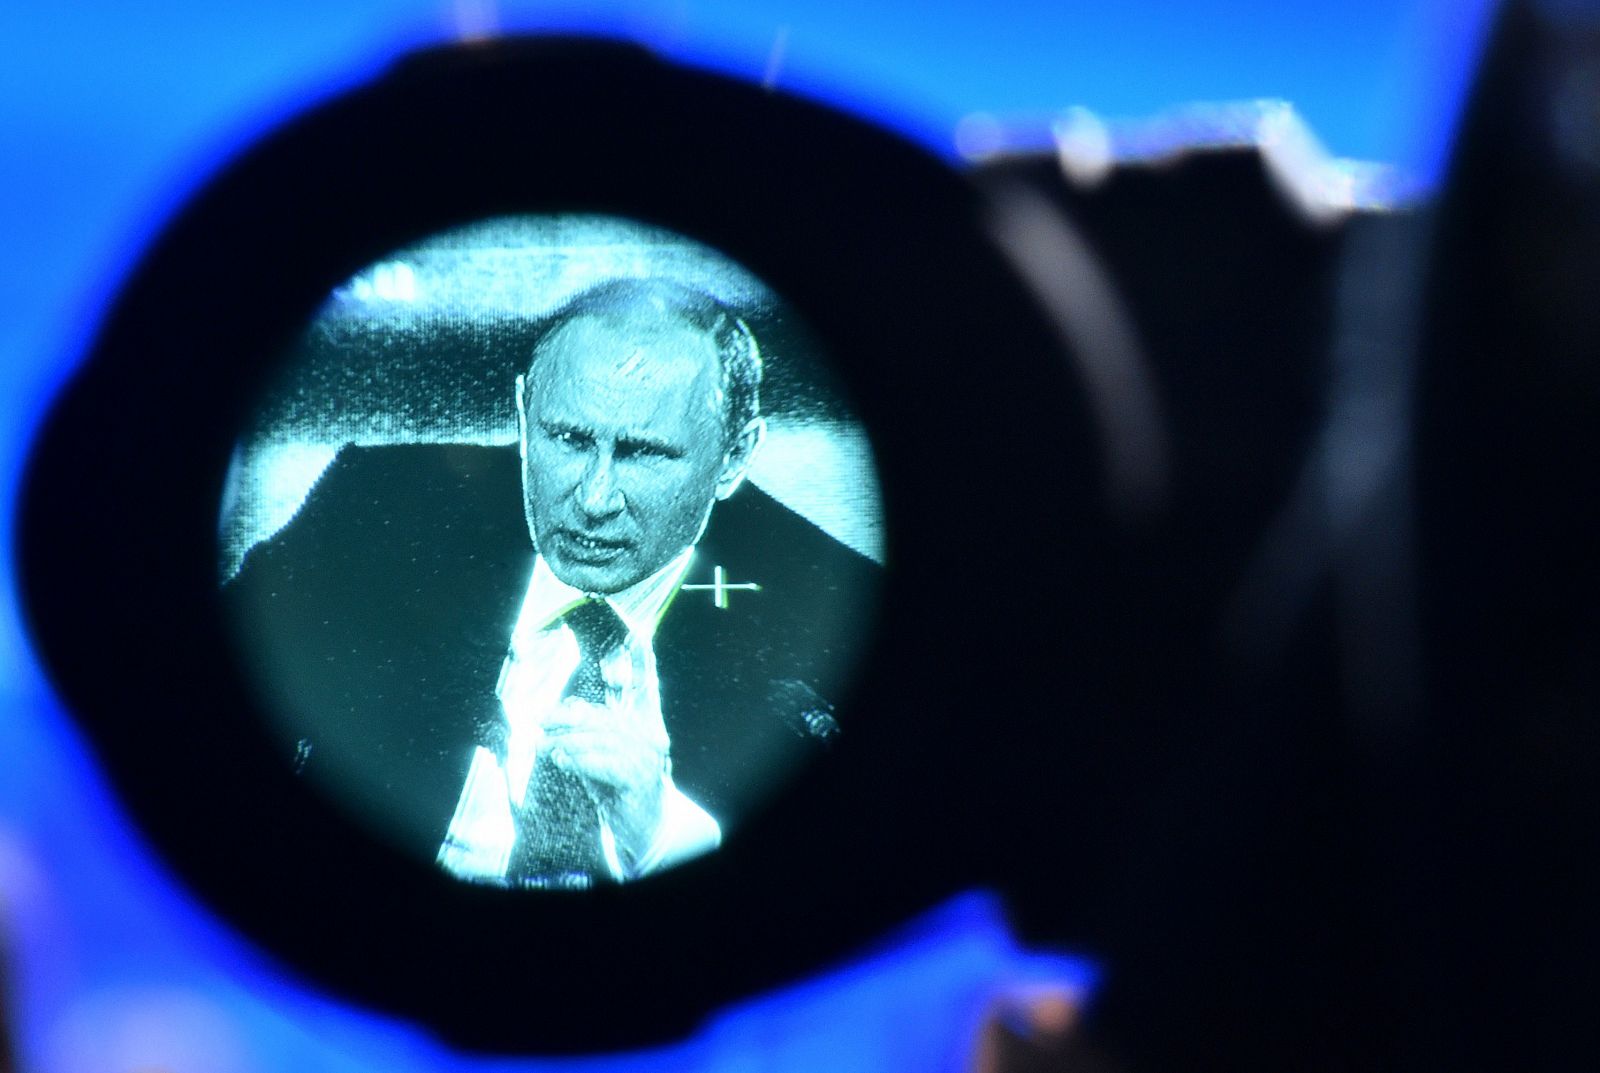 El presidente de Rusia, Vladimir Putin, visto a través del objetivo de una cámara, este jueves en Moscú.